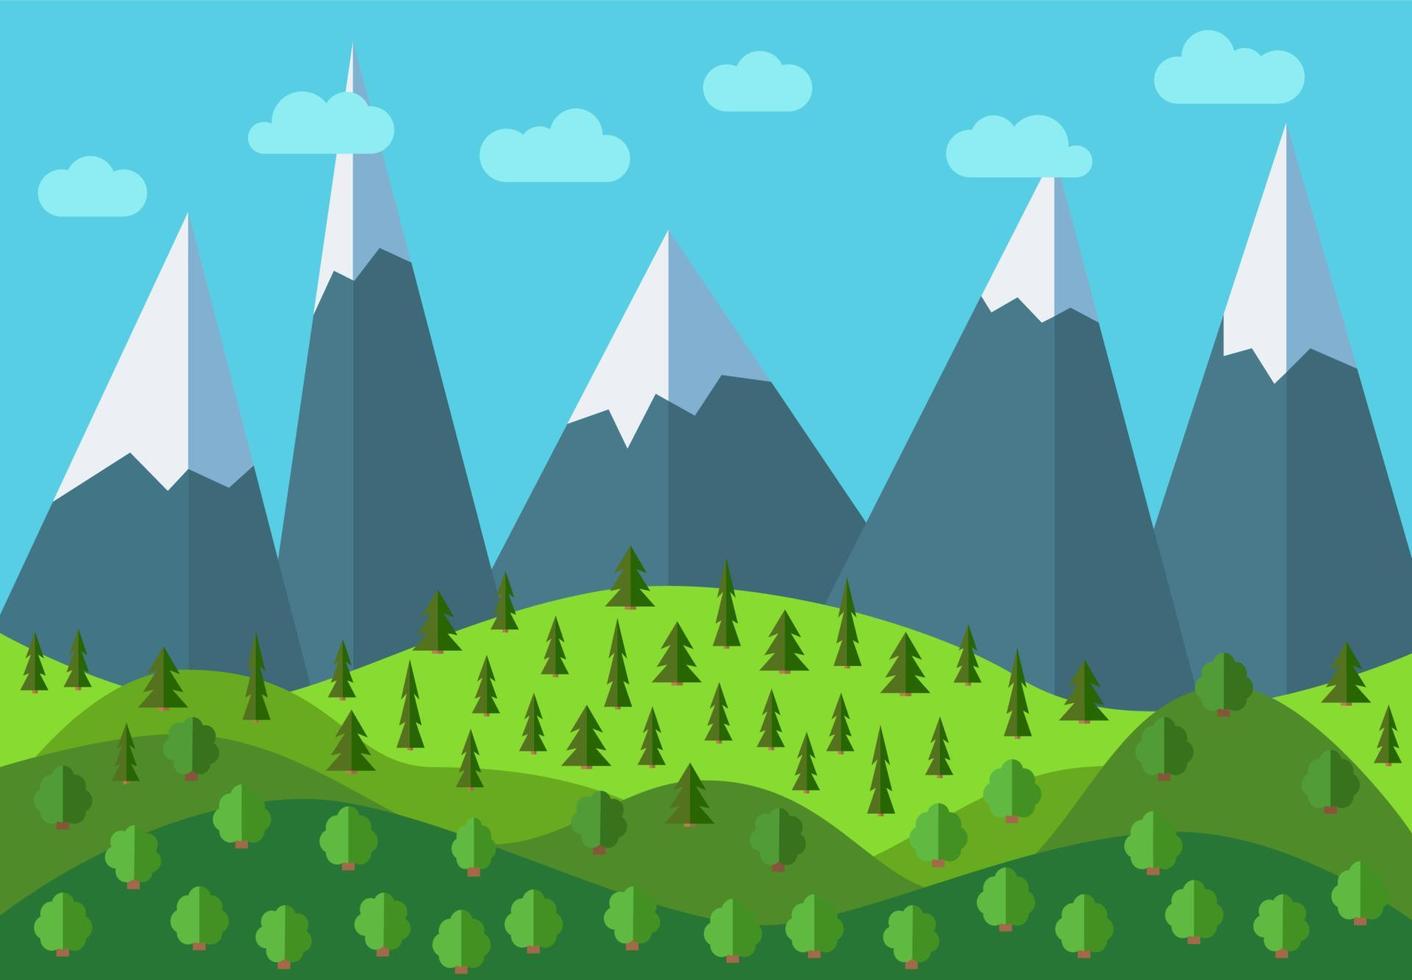 paisaje de dibujos animados de montaña panorámica vectorial. paisaje natural de estilo plano con cielo azul, nubes, árboles, colinas y montañas con nieve en los picos. vector